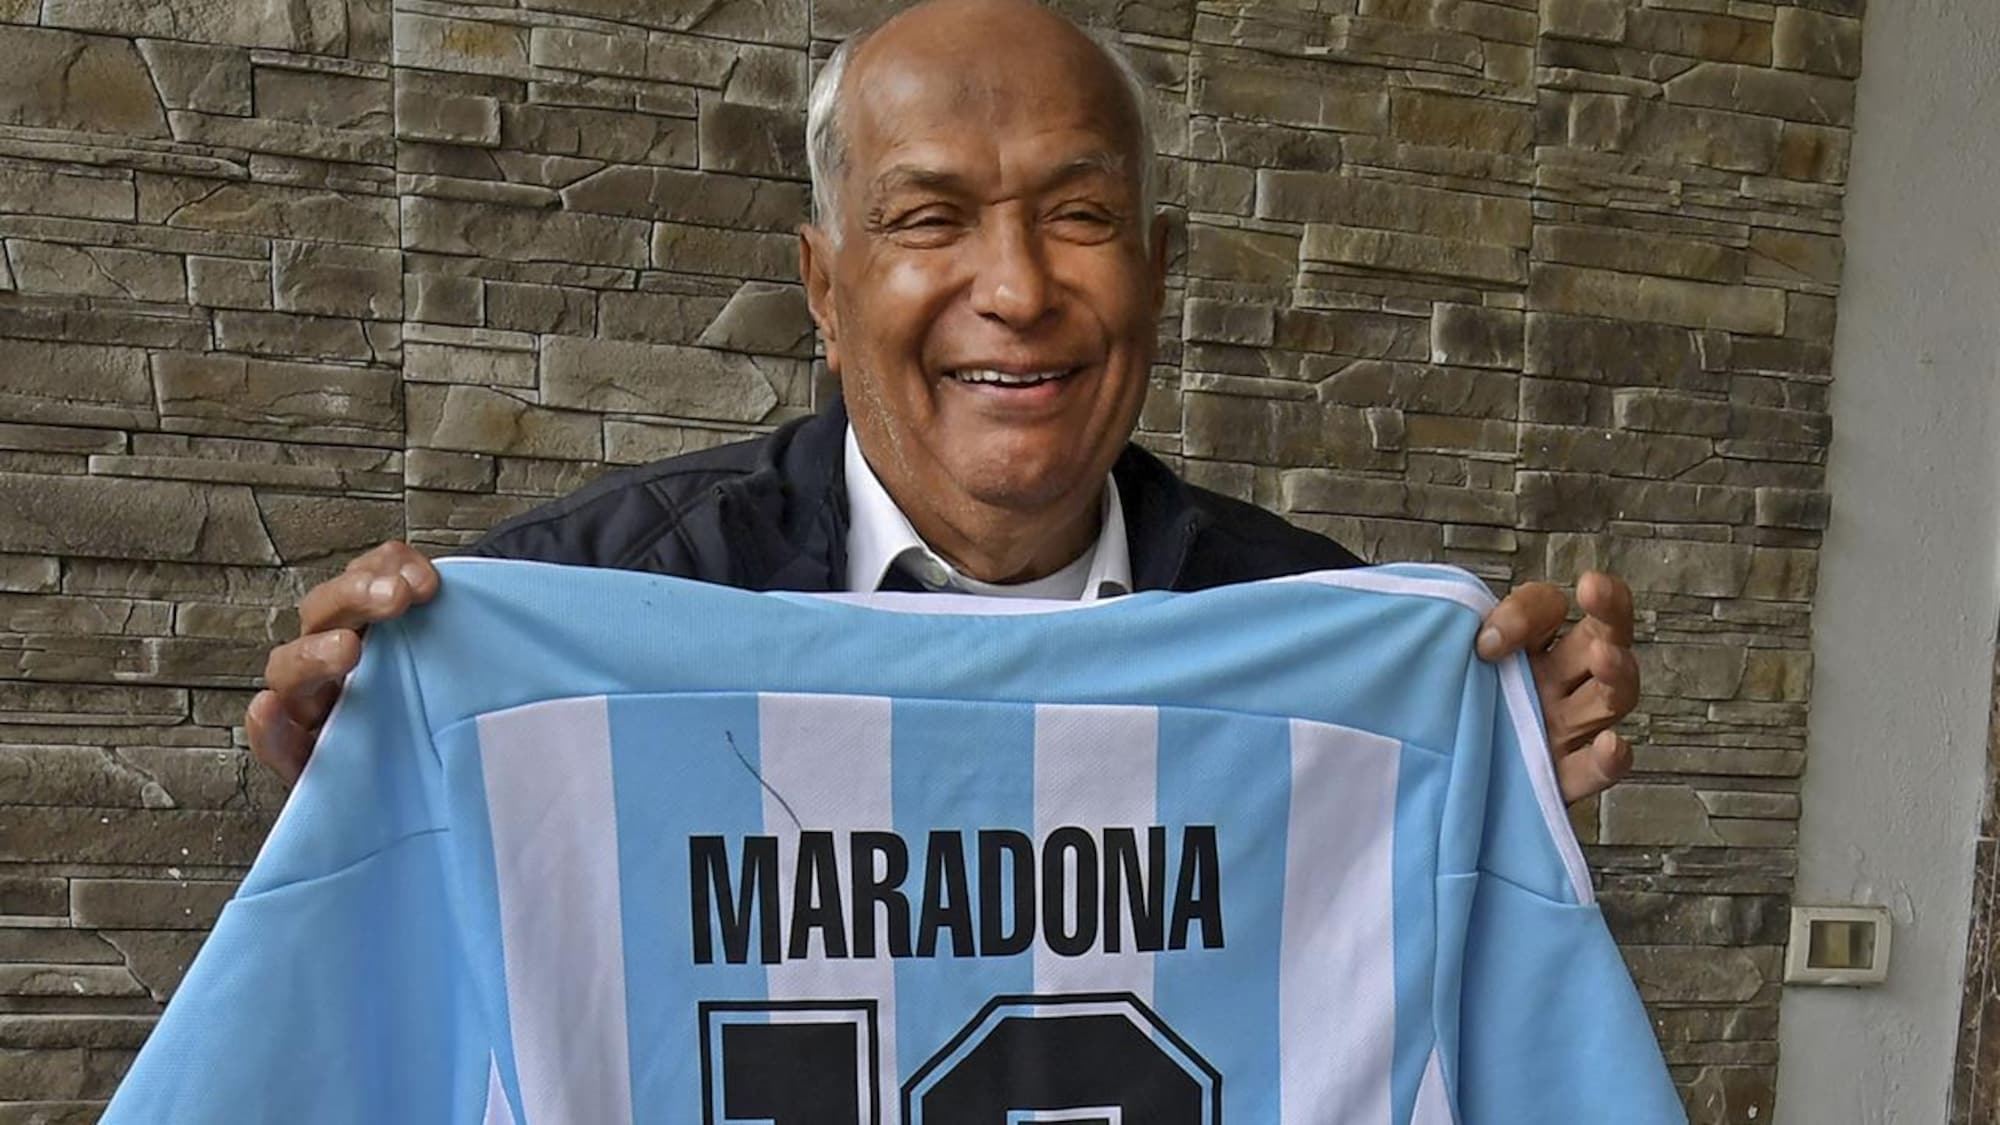 Il sourit en montrant le dos d'un chandail bleu et blanc avec le no 10 de Maradona